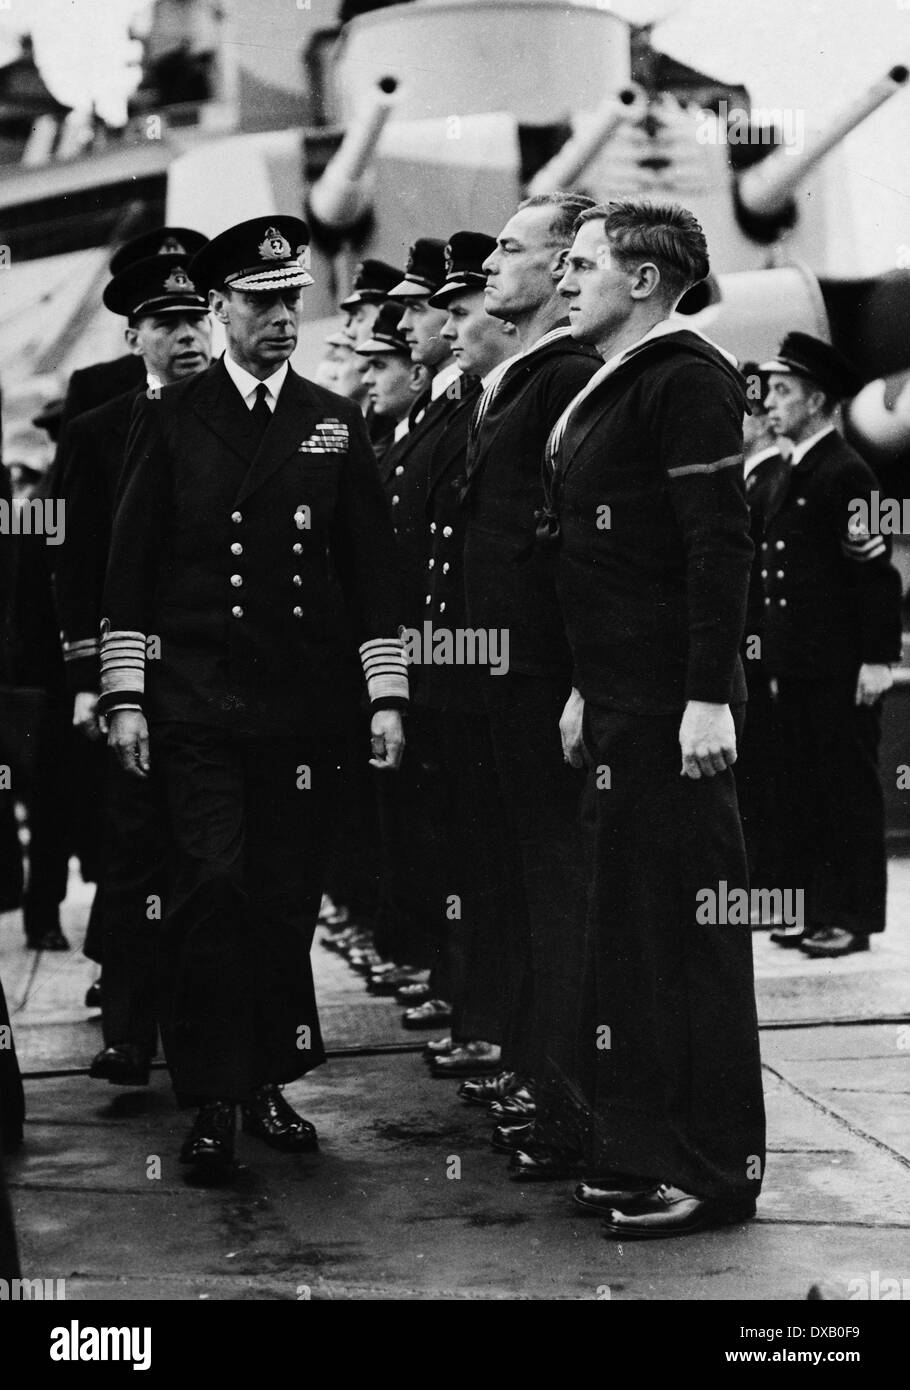 Royal Navy George VI ispeziona i marinai a bordo di una nave da battaglia della marina durante il WW2 Foto Stock